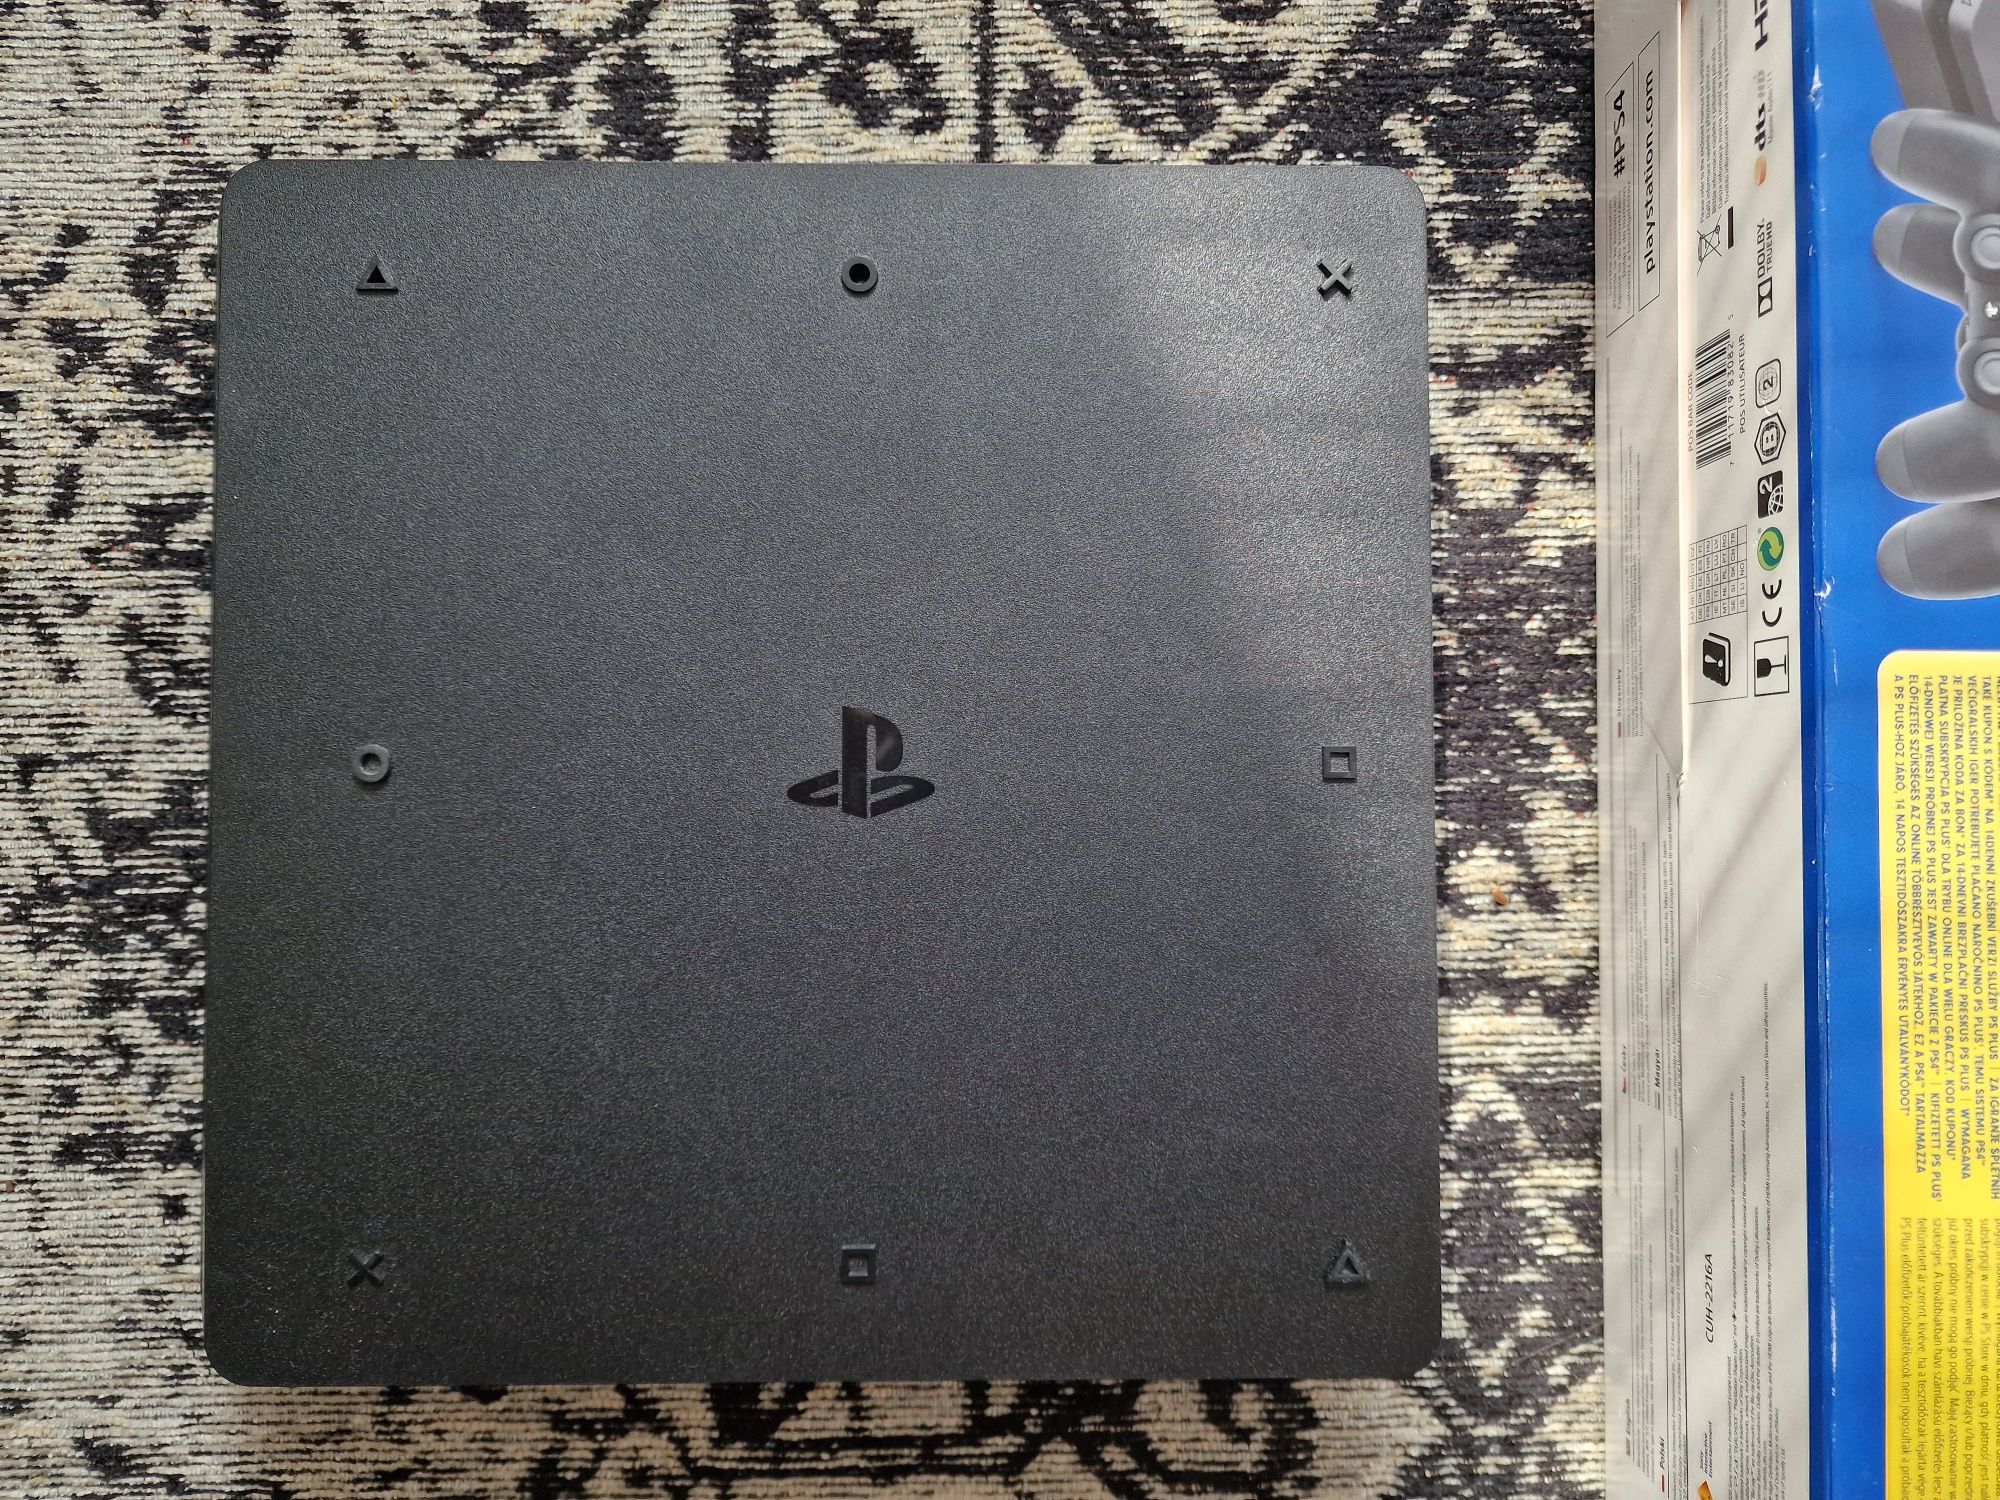 Konsola PS4 Slim PlayStation Pudełko Gra